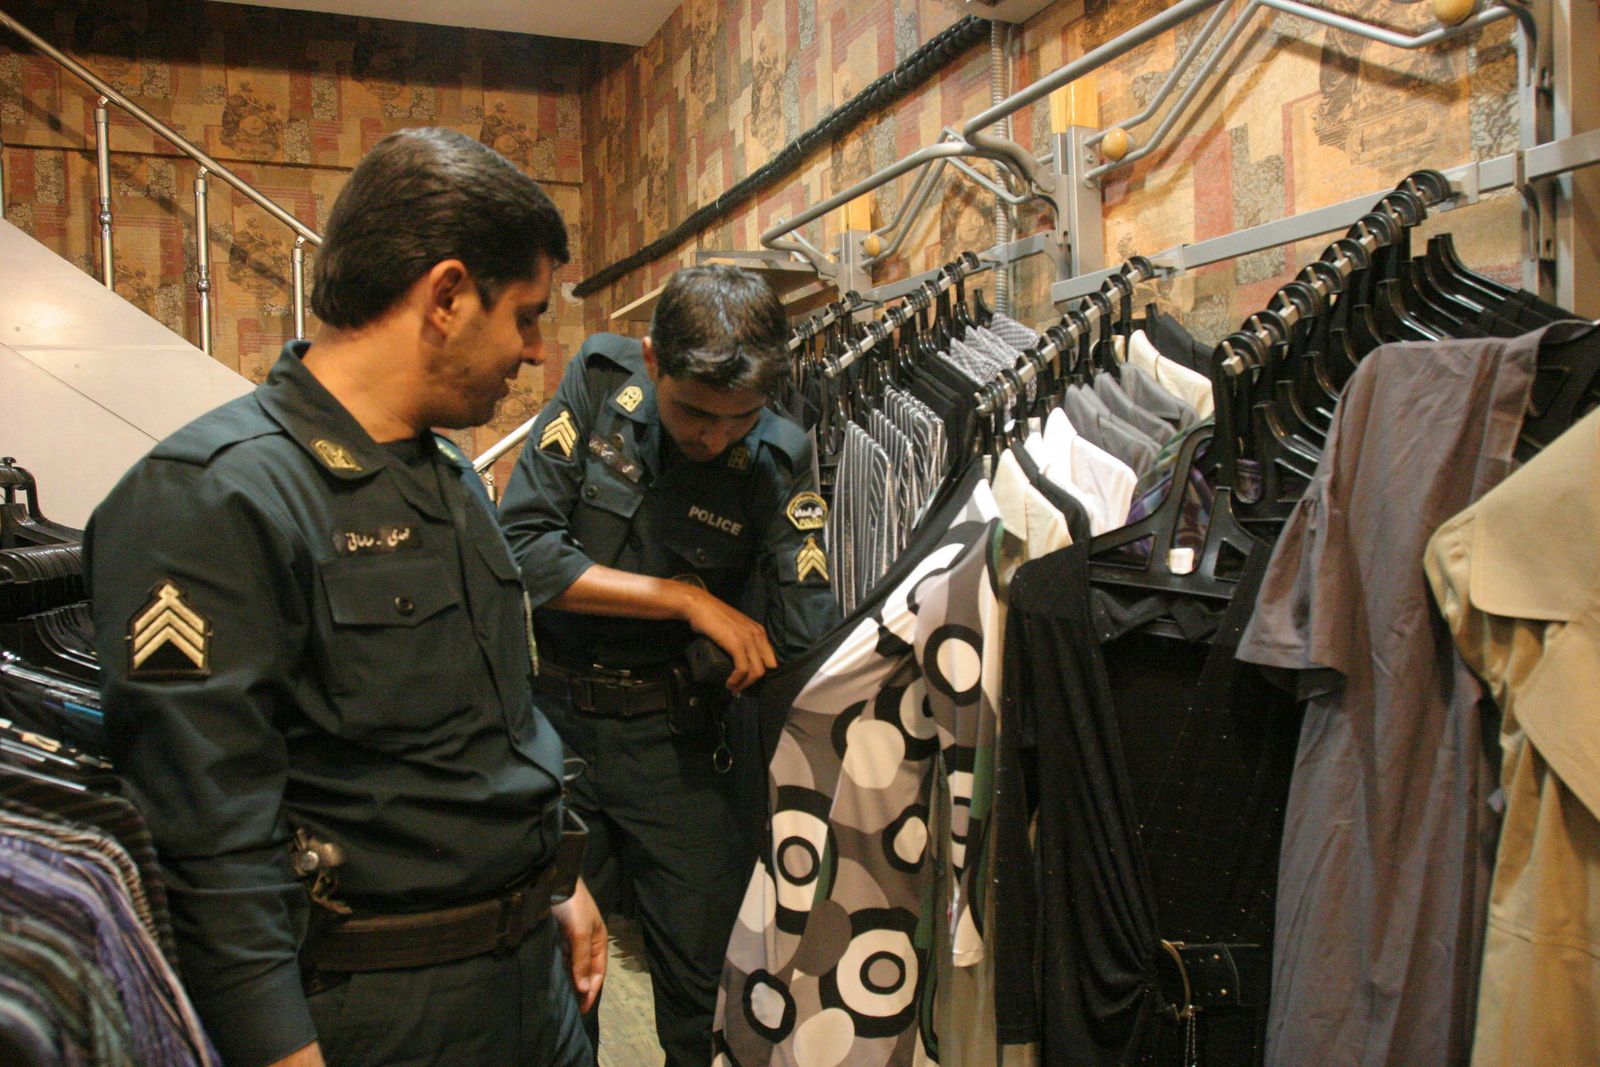 عناصر من شرطة الأخلاق يبينون نماذج اللباس النسائي غير المسموح به في الأماكن العامة- 18 يونيو 2008 - REUTERS